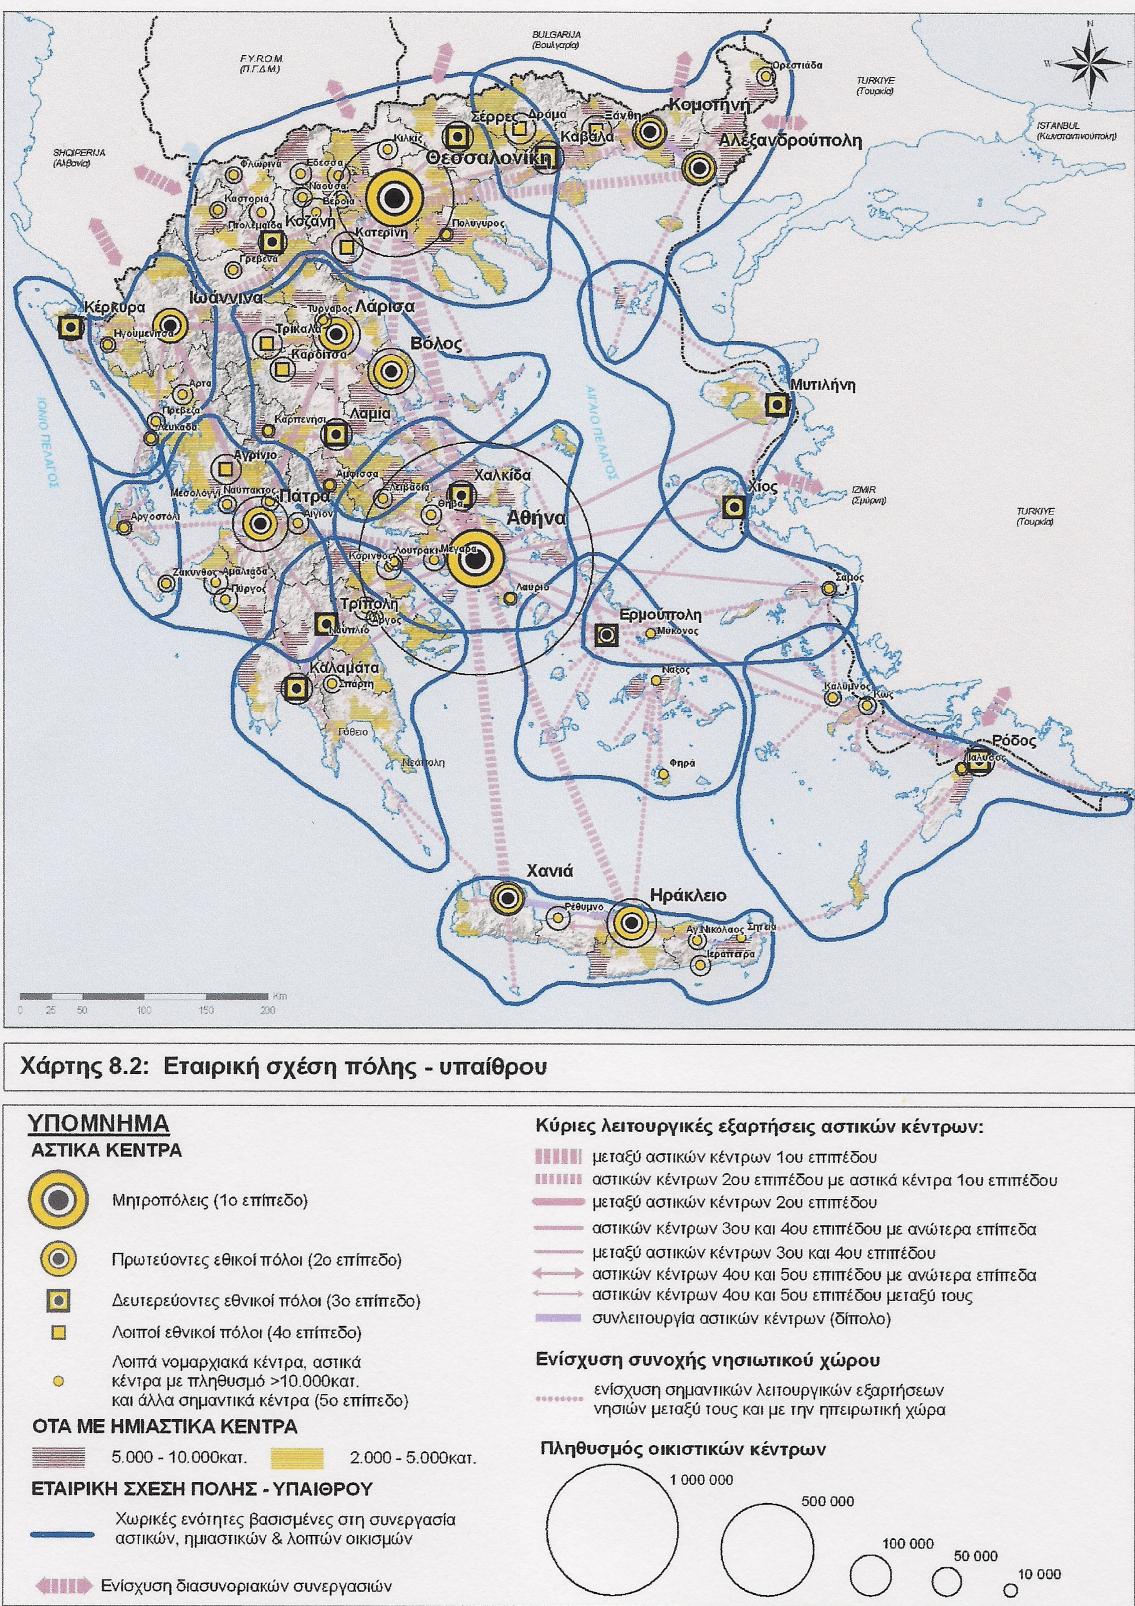 ΠΑΡΑΡΤΗΜΑ Χάρτης 5: Εταιρική σχέση πόλης υπαίθρου Πηγή: (Γενικό Πλαίσιο Χωροταξικού Σχεδιασμού και Αειφόρου